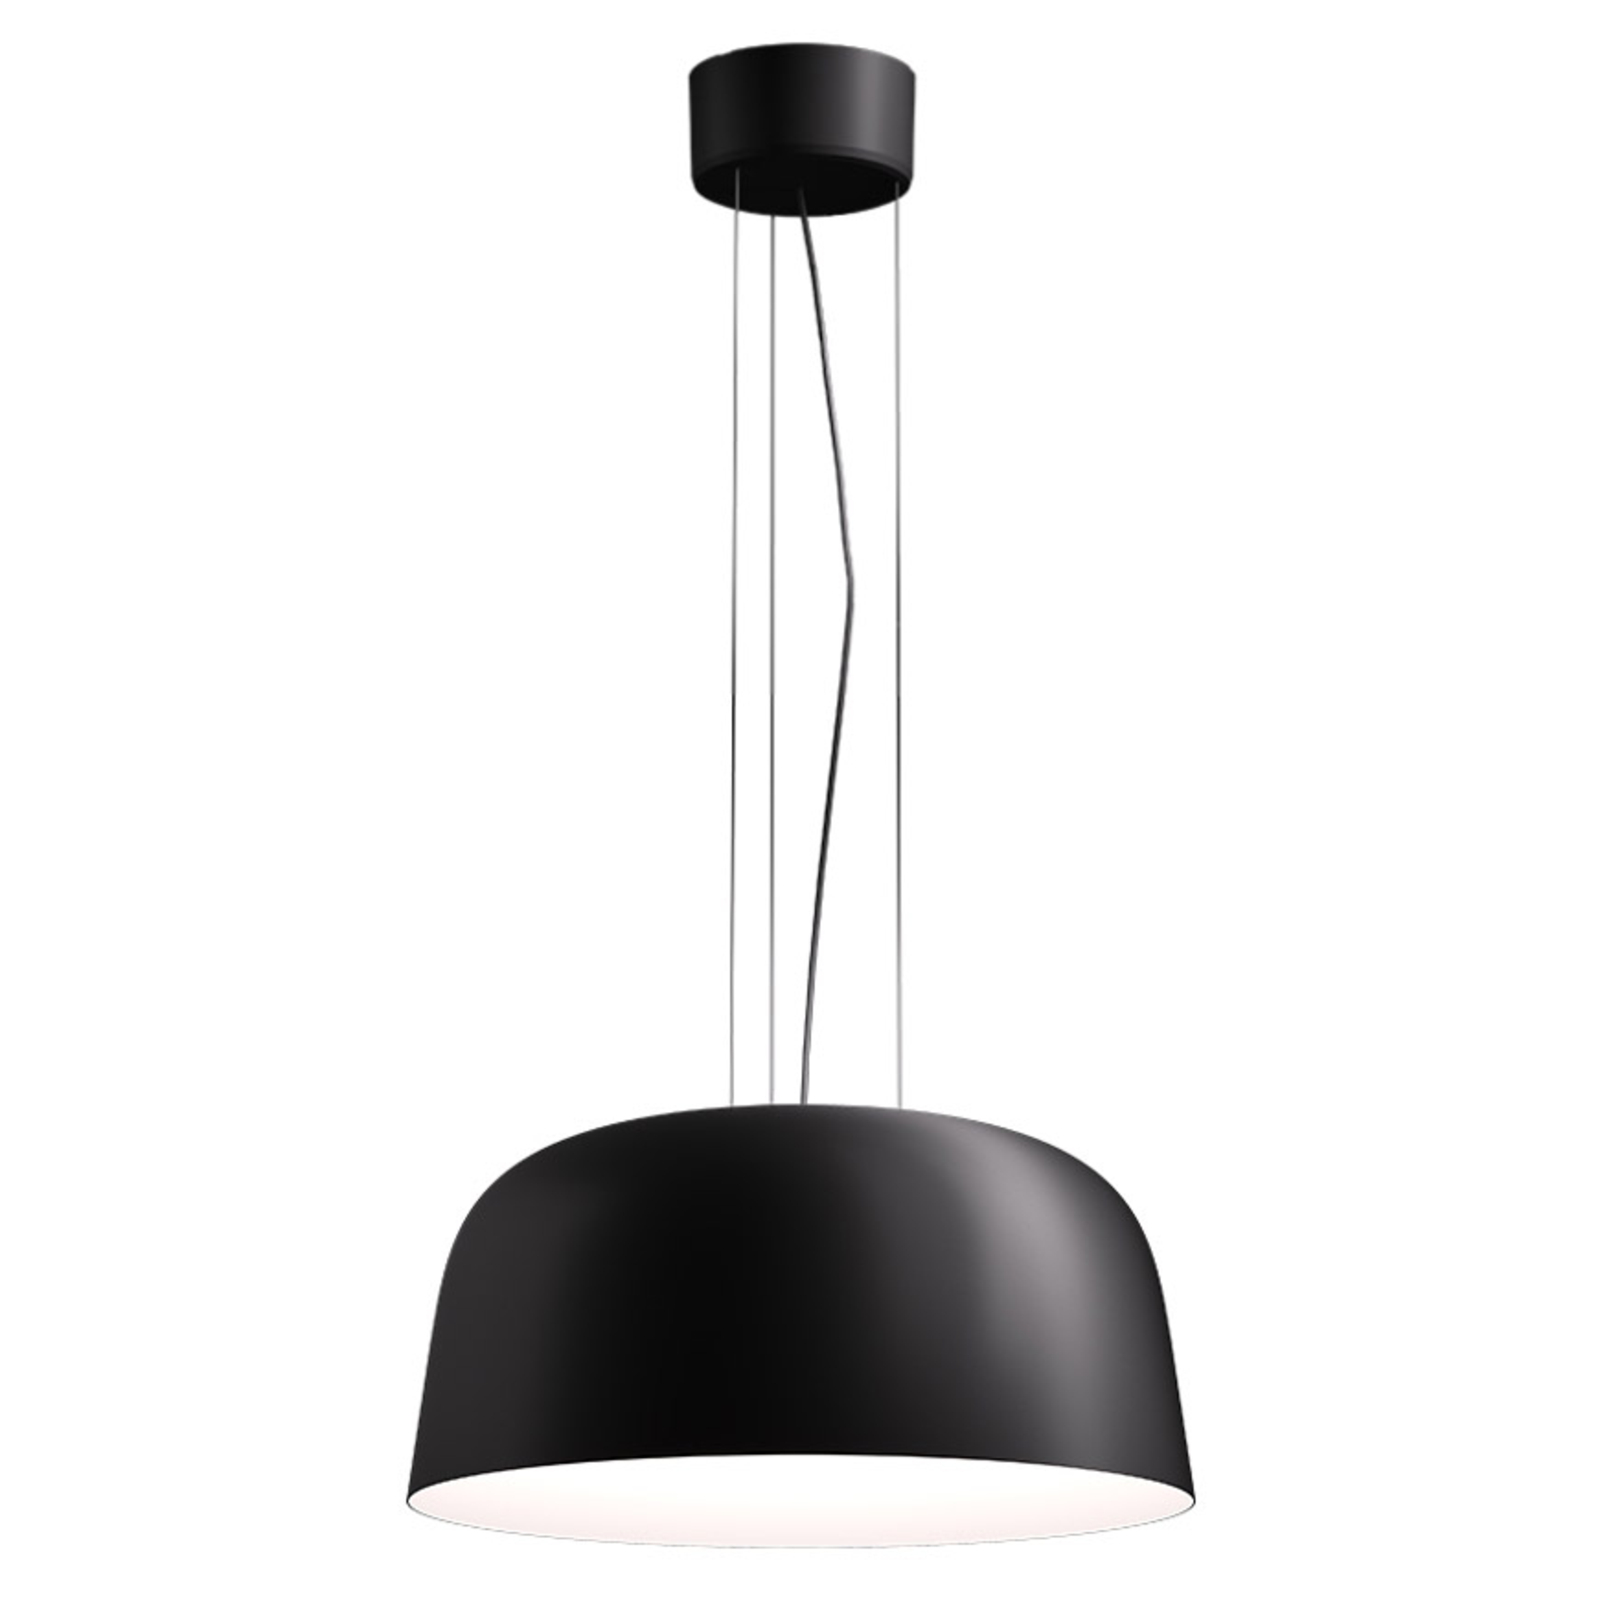 LED pakabinamas šviestuvas Sva 840 Dali Ø 50cm juodas